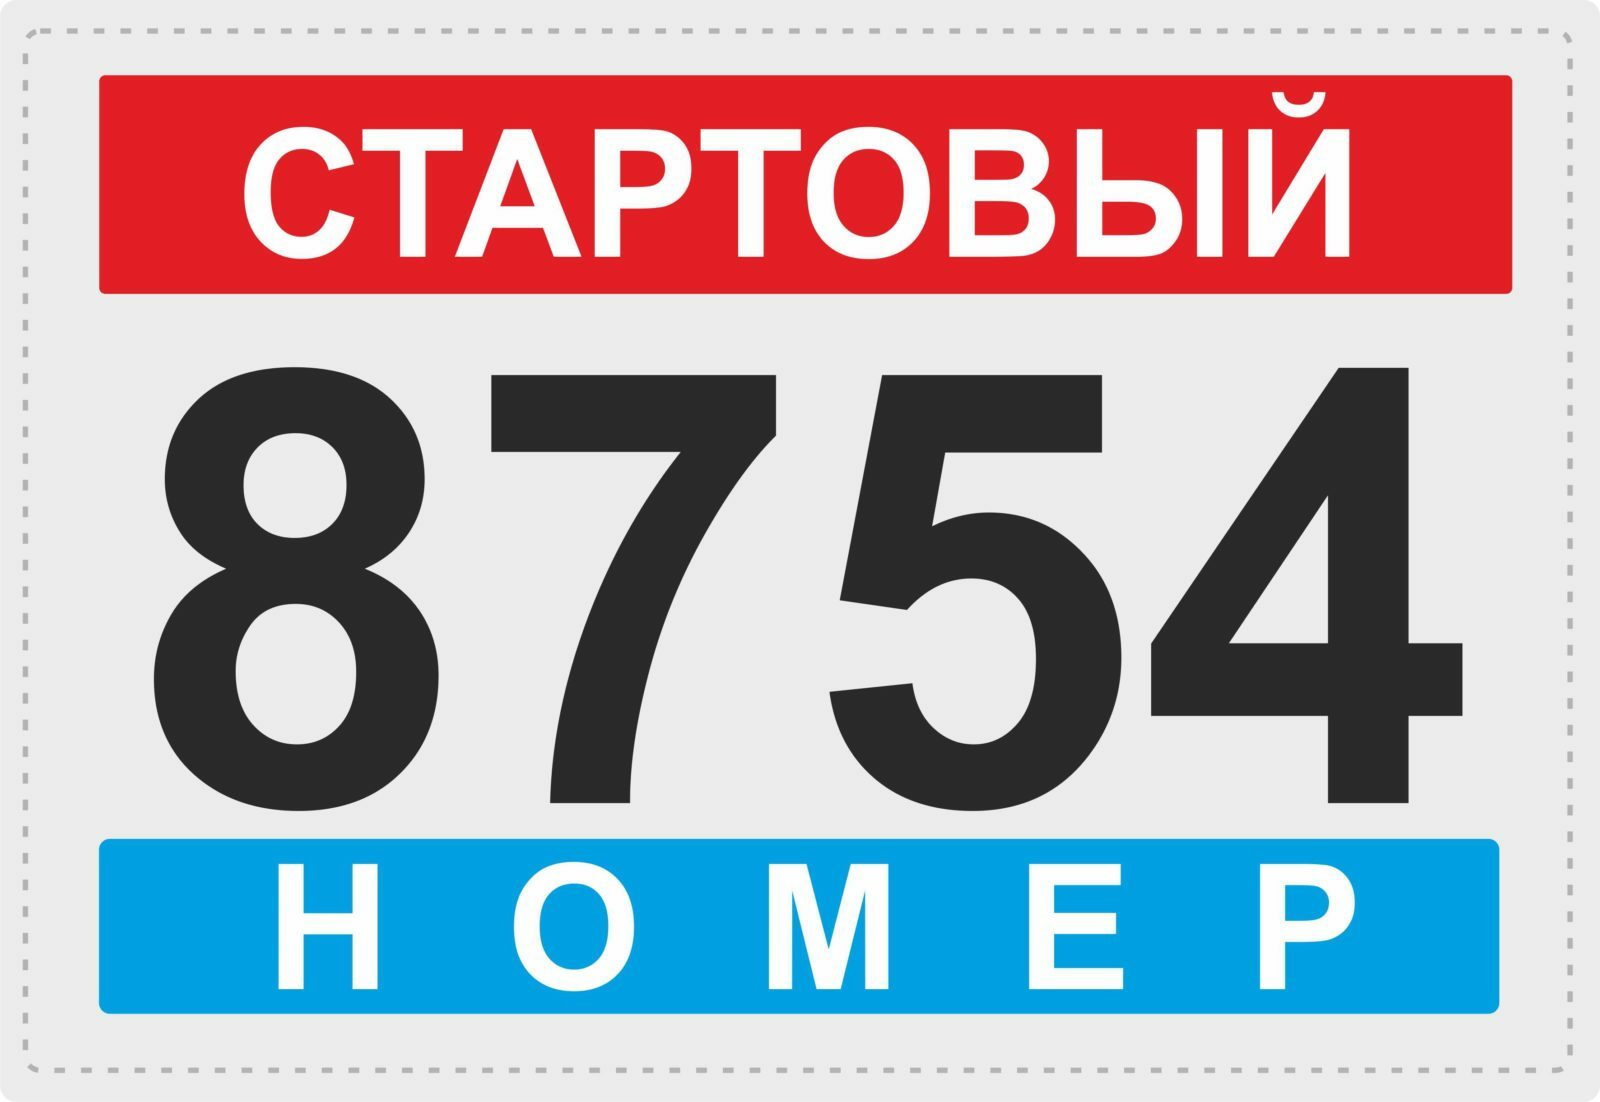 Бесплатные онлайн номера для телеграмма россия фото 46